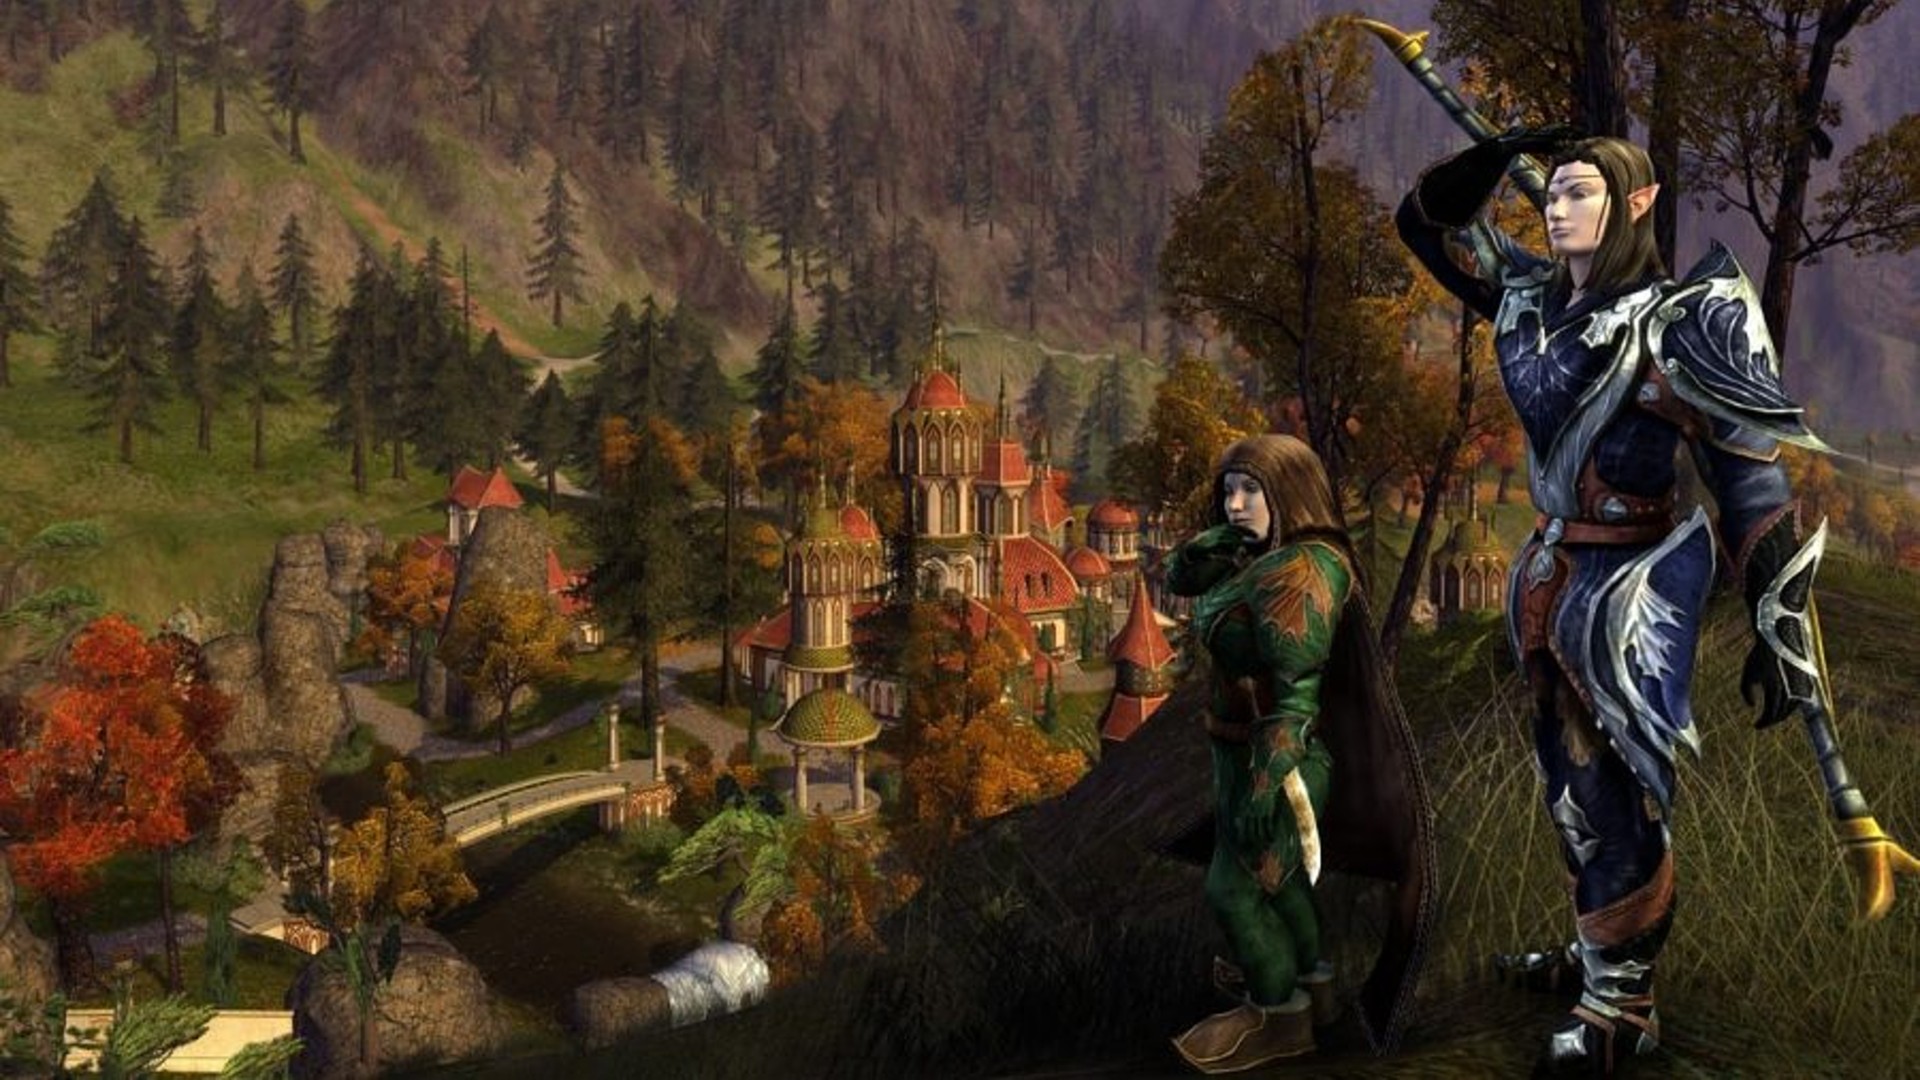 I migliori giochi per PC gratuiti: Lord of the Rings Online. L'immagine mostra un elfo e uno hobbit in piedi tra gli alberi vicino a una città